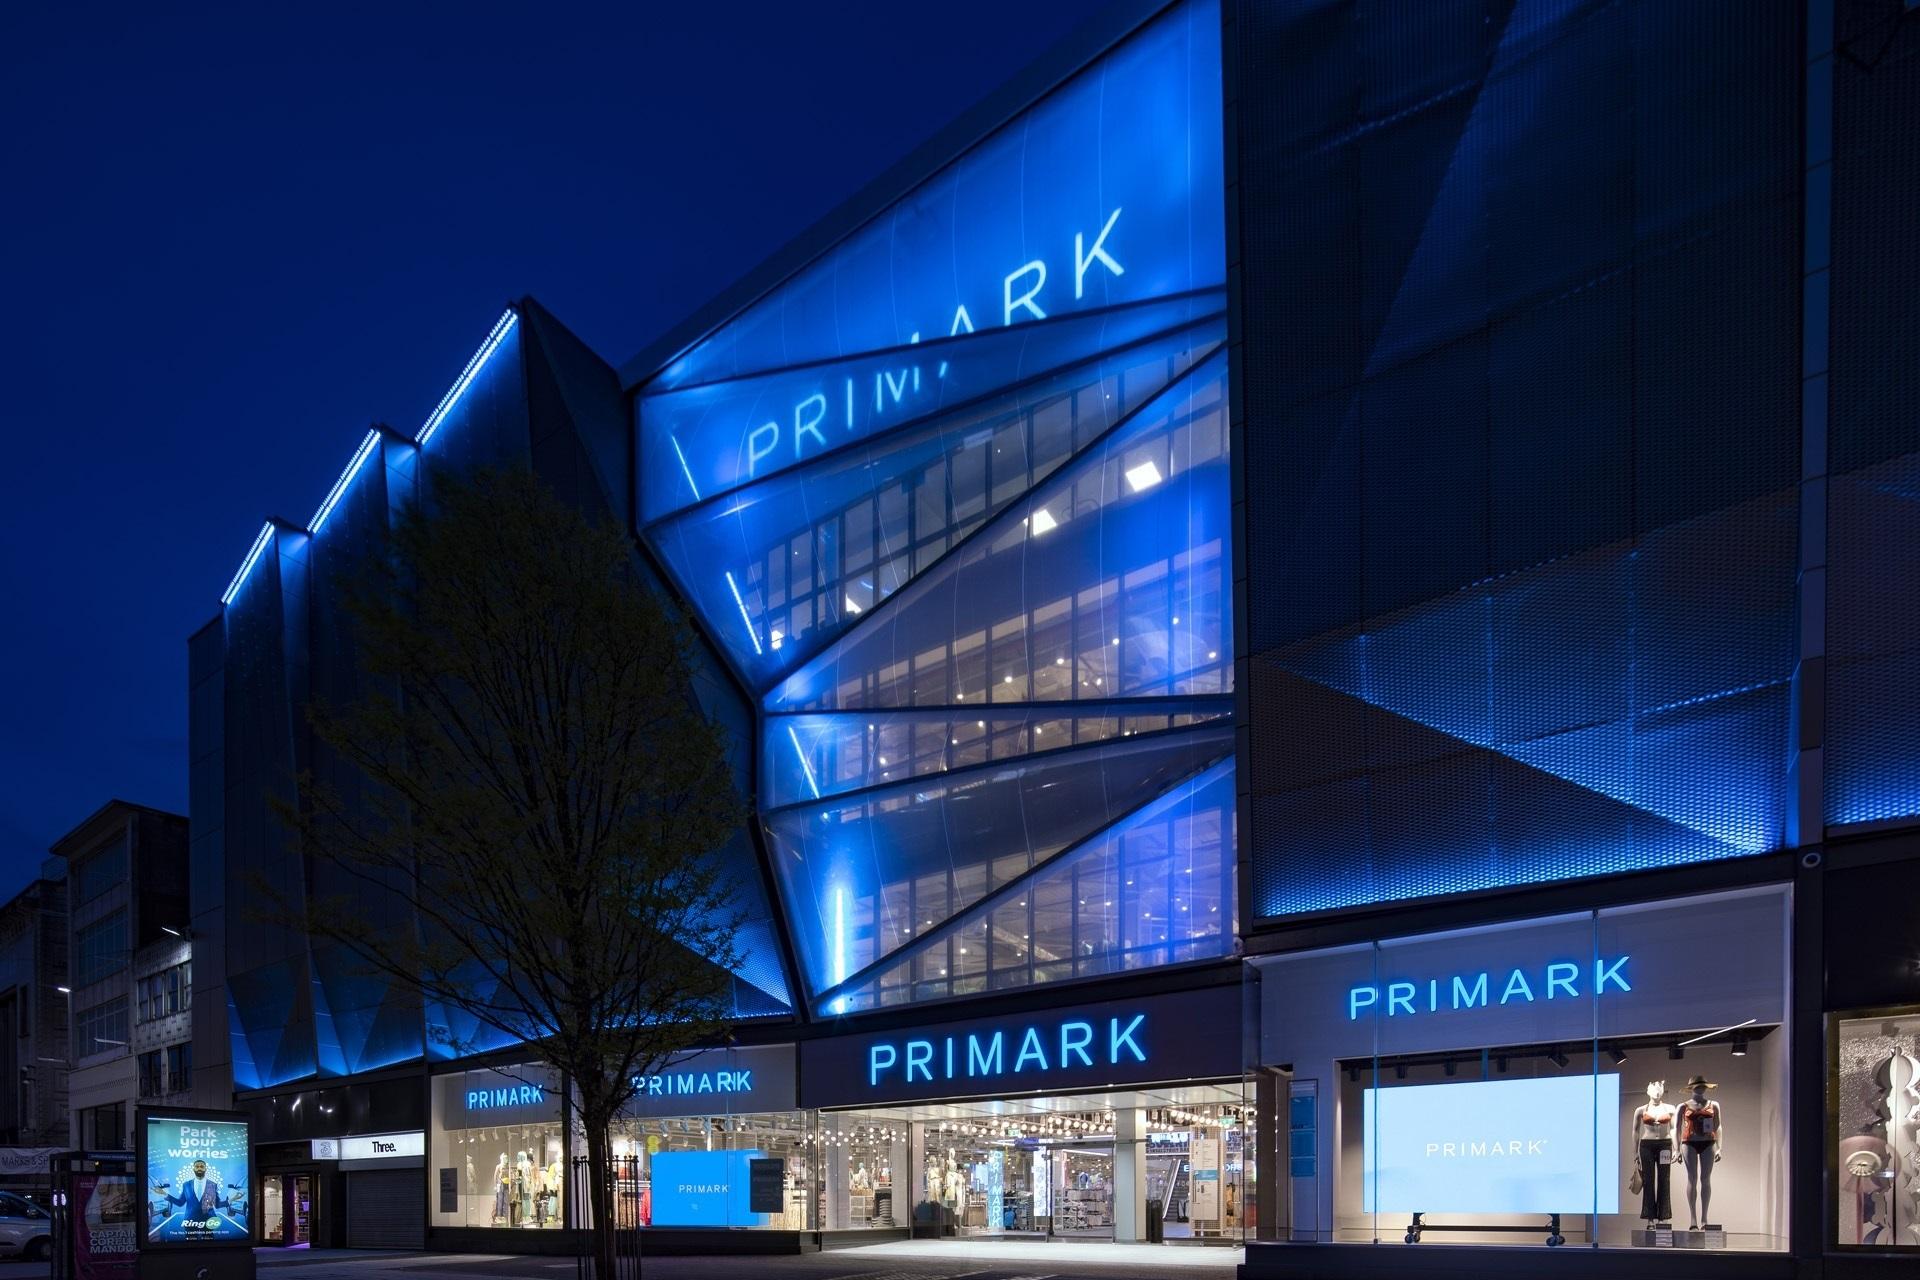 Primark abre en Birmingham su tienda más grande del mundo - Primark